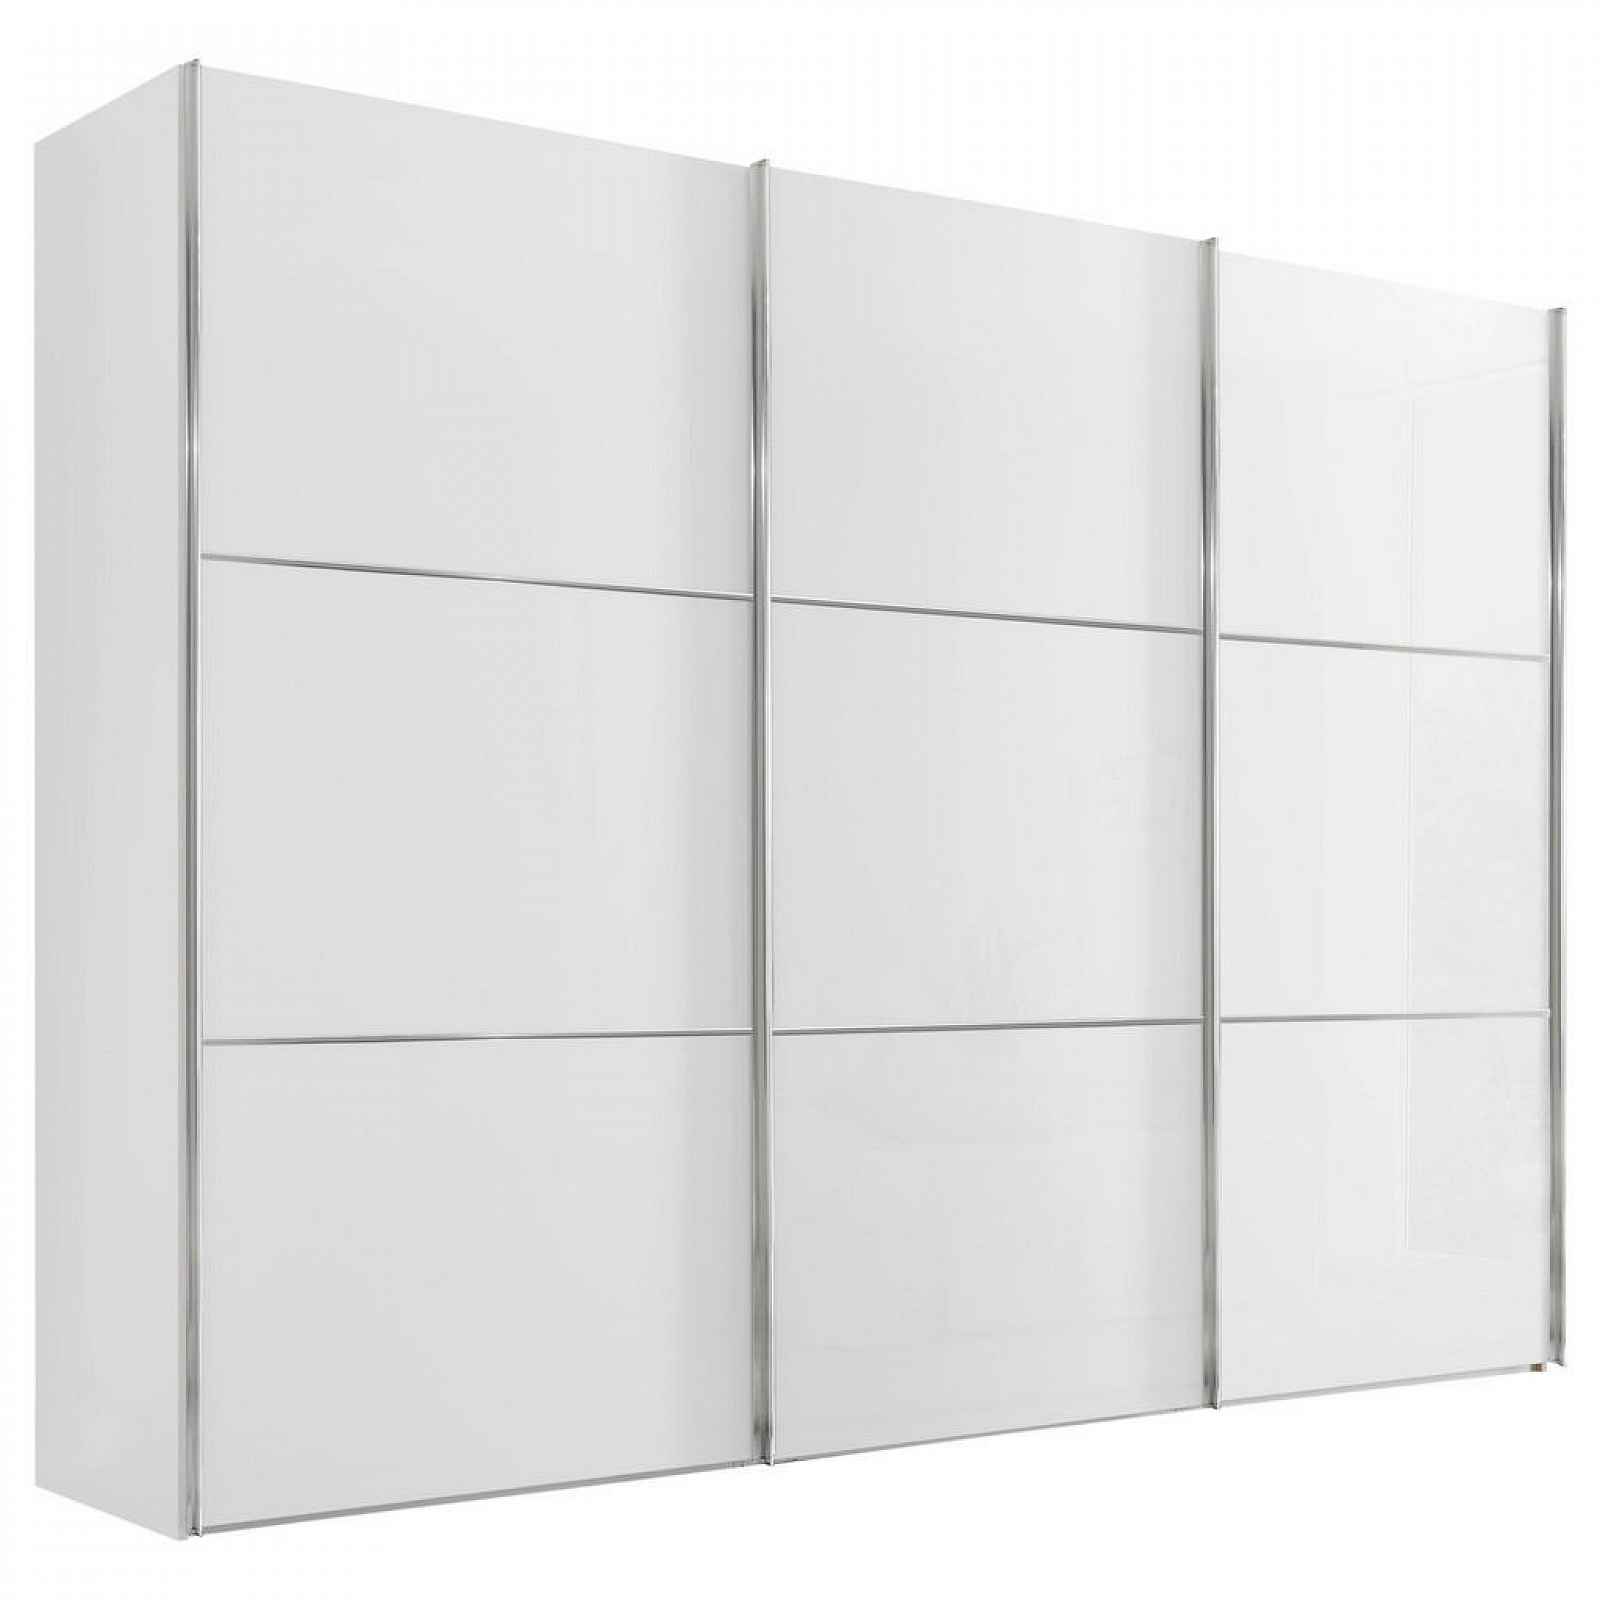 Moderano SCHWEBETÜRENSCHRANK Glasfront, bílá, 298/222/68 cm - Šatní skříně - 000531006078